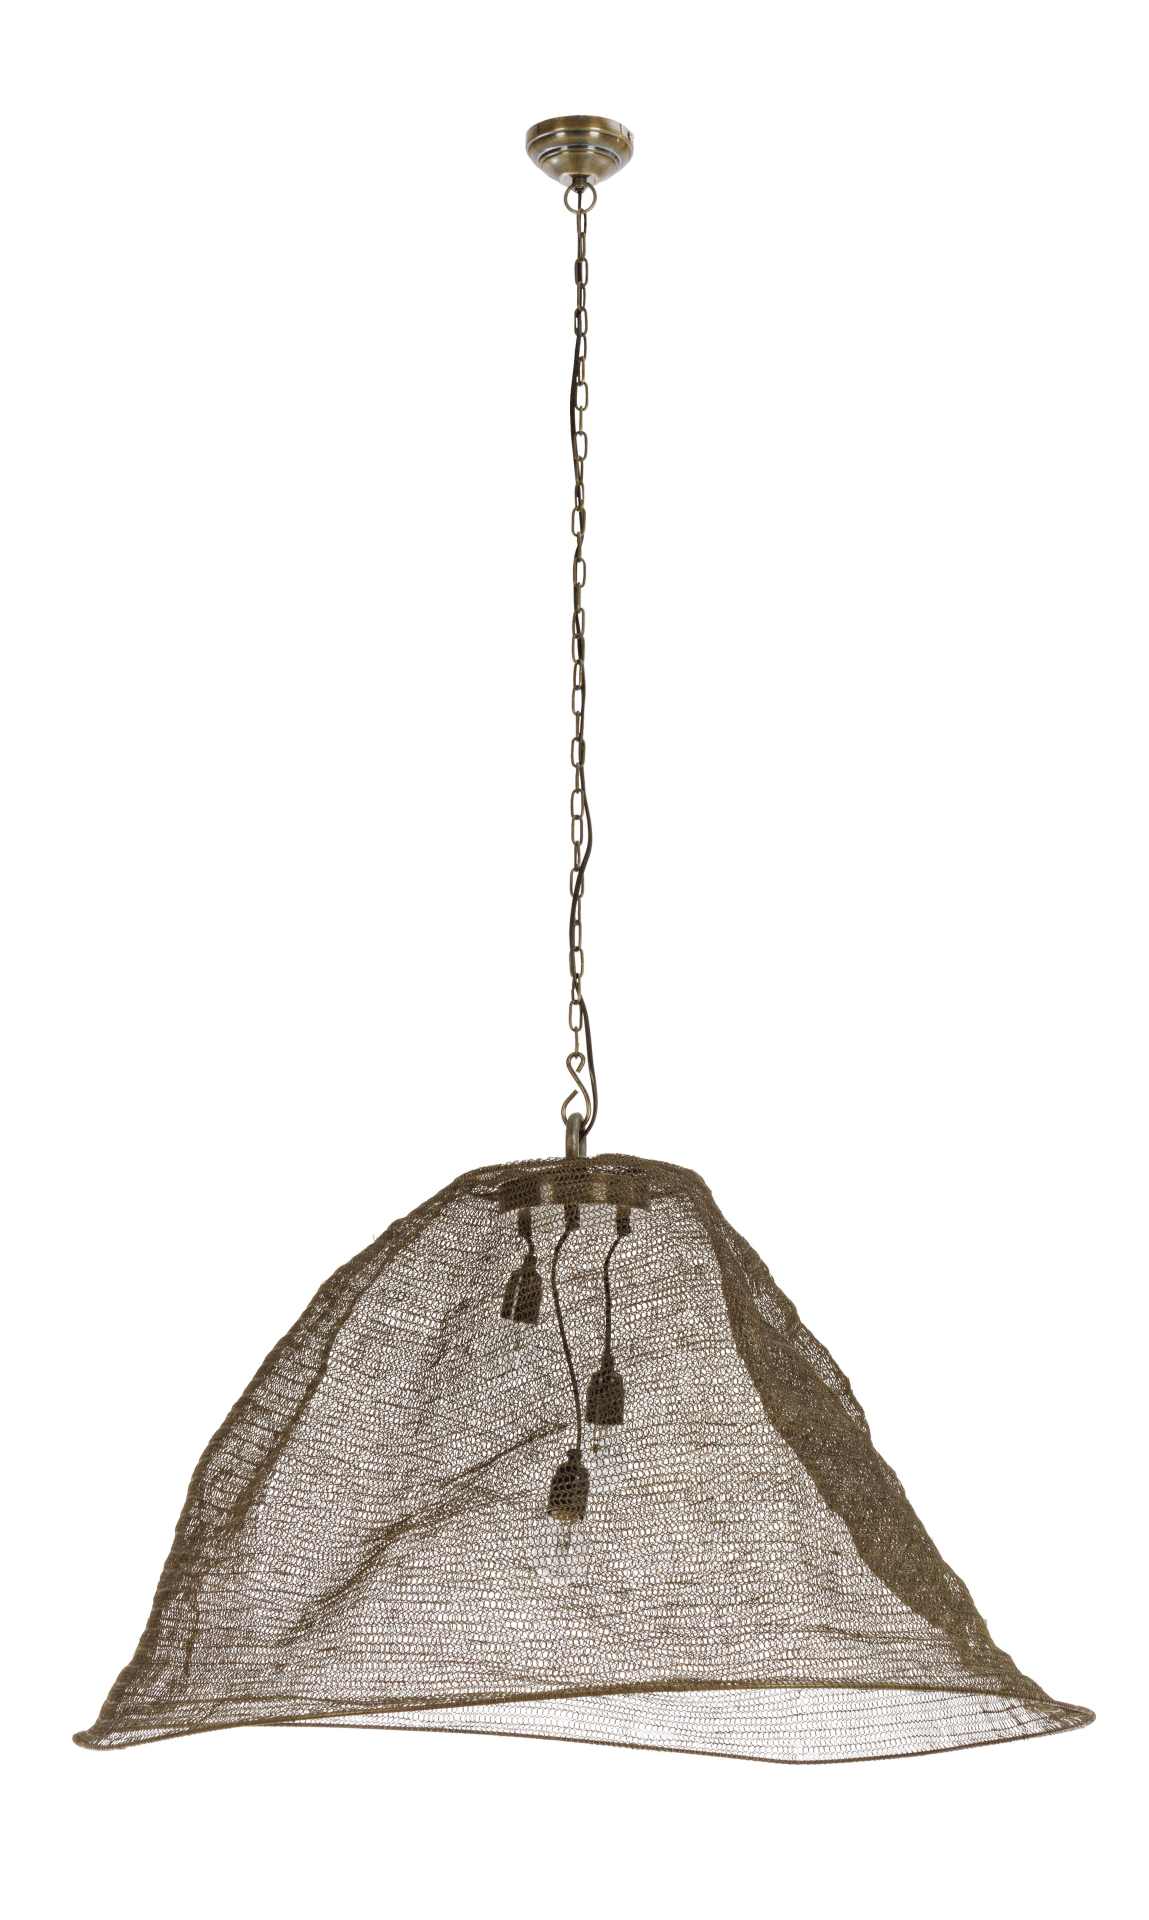 Die Hängeleuchte Amish überzeugt mit ihrem klassischen Design. Gefertigt wurde sie aus Metall, welches einen Messing Farbton besitzt.Der Lampenschirm ist auch aus Metall. Die Lampe besitzt eine Höhe von 62 cm.